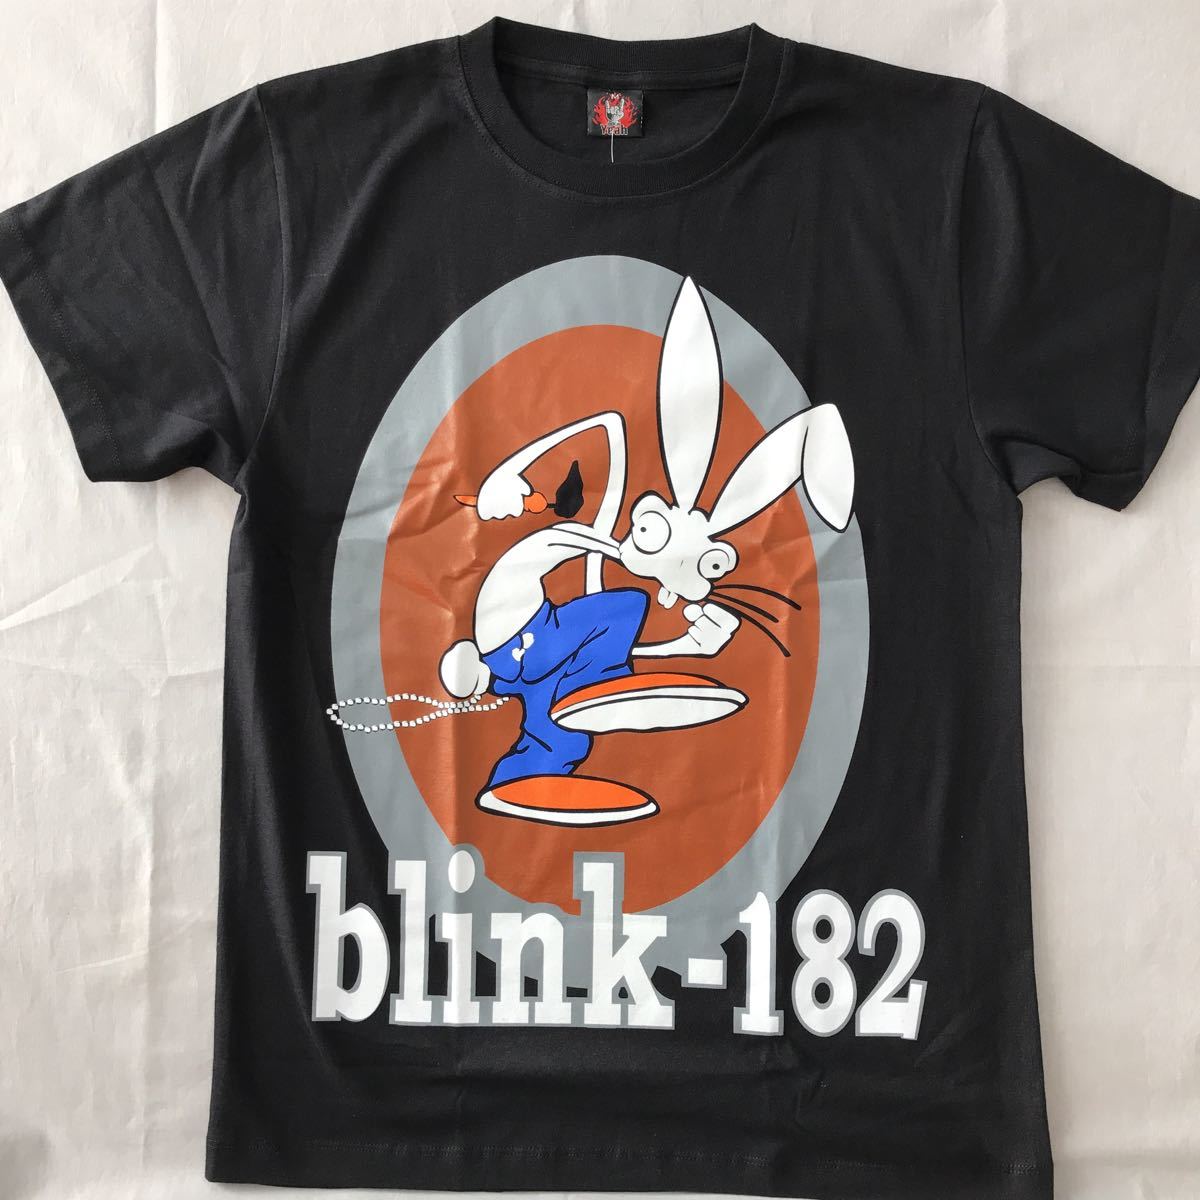 バンドTシャツ ブリンク 182 (blink-182)w1新品M_画像1